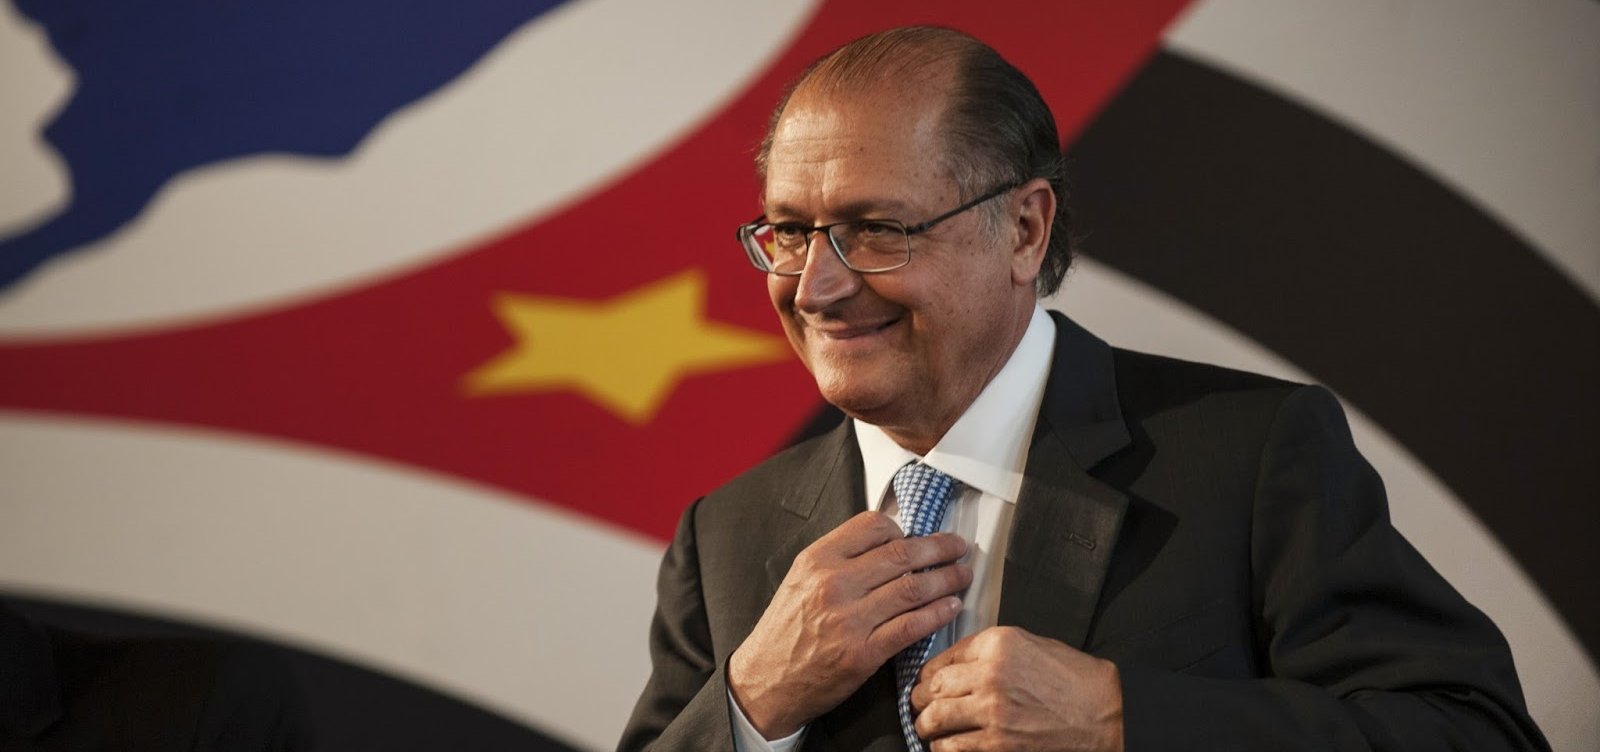 Familiares de Alckmin lucraram R$ 3,8 milhões com decretos do ex-governador de SP